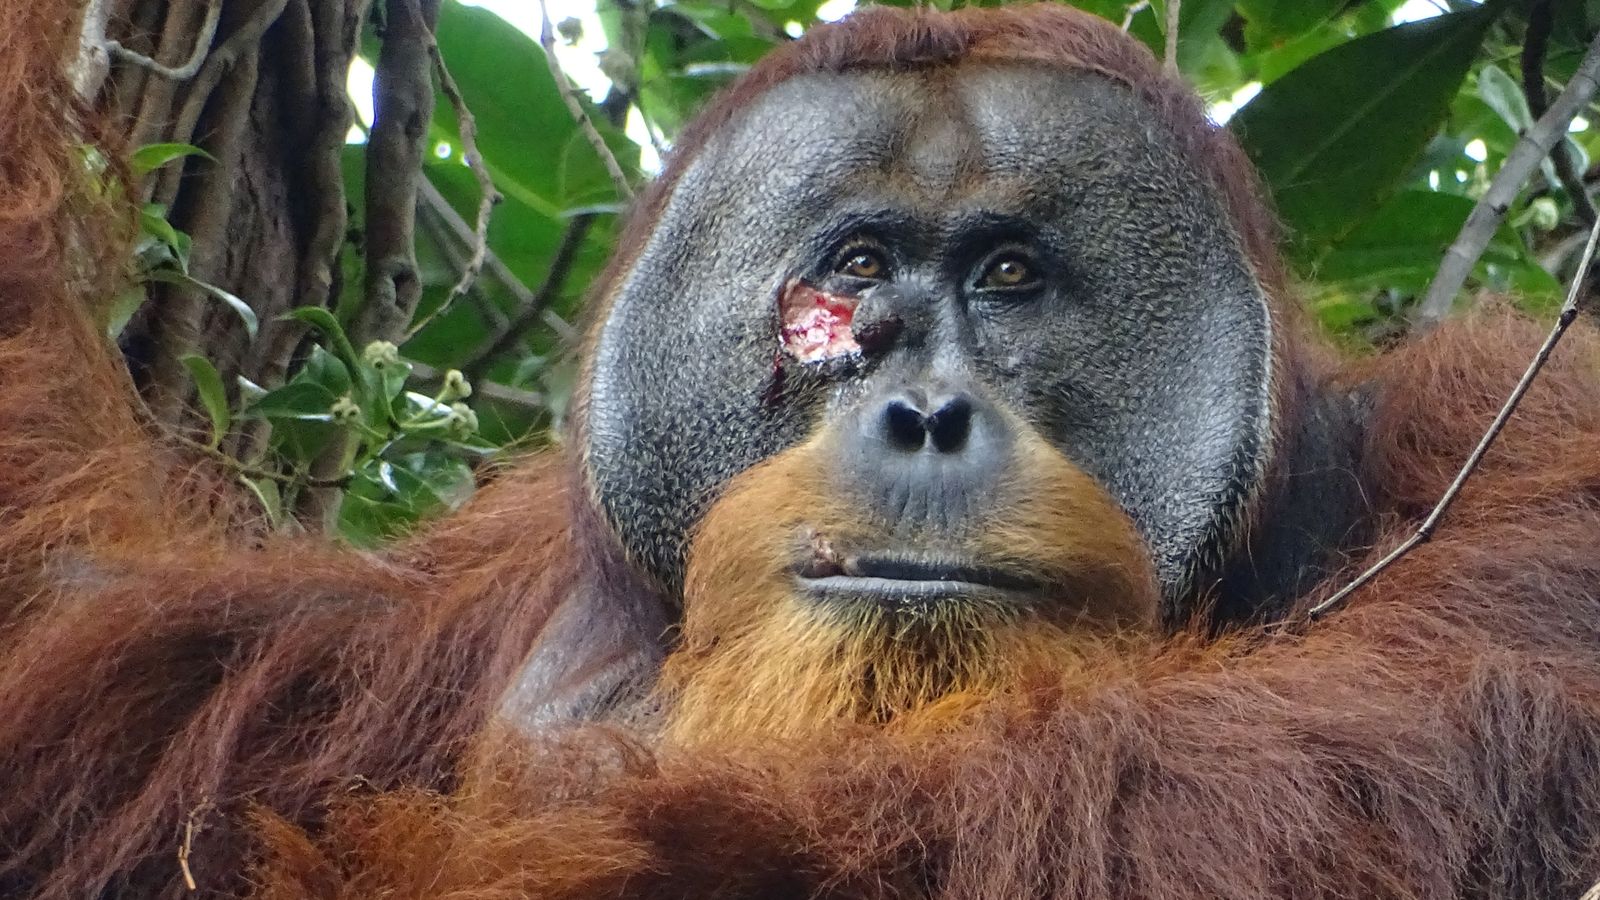 Un orang-outan vu utiliser une plante médicinale pour traiter une blessure chez un animal sauvage |  Nouvelles du monde